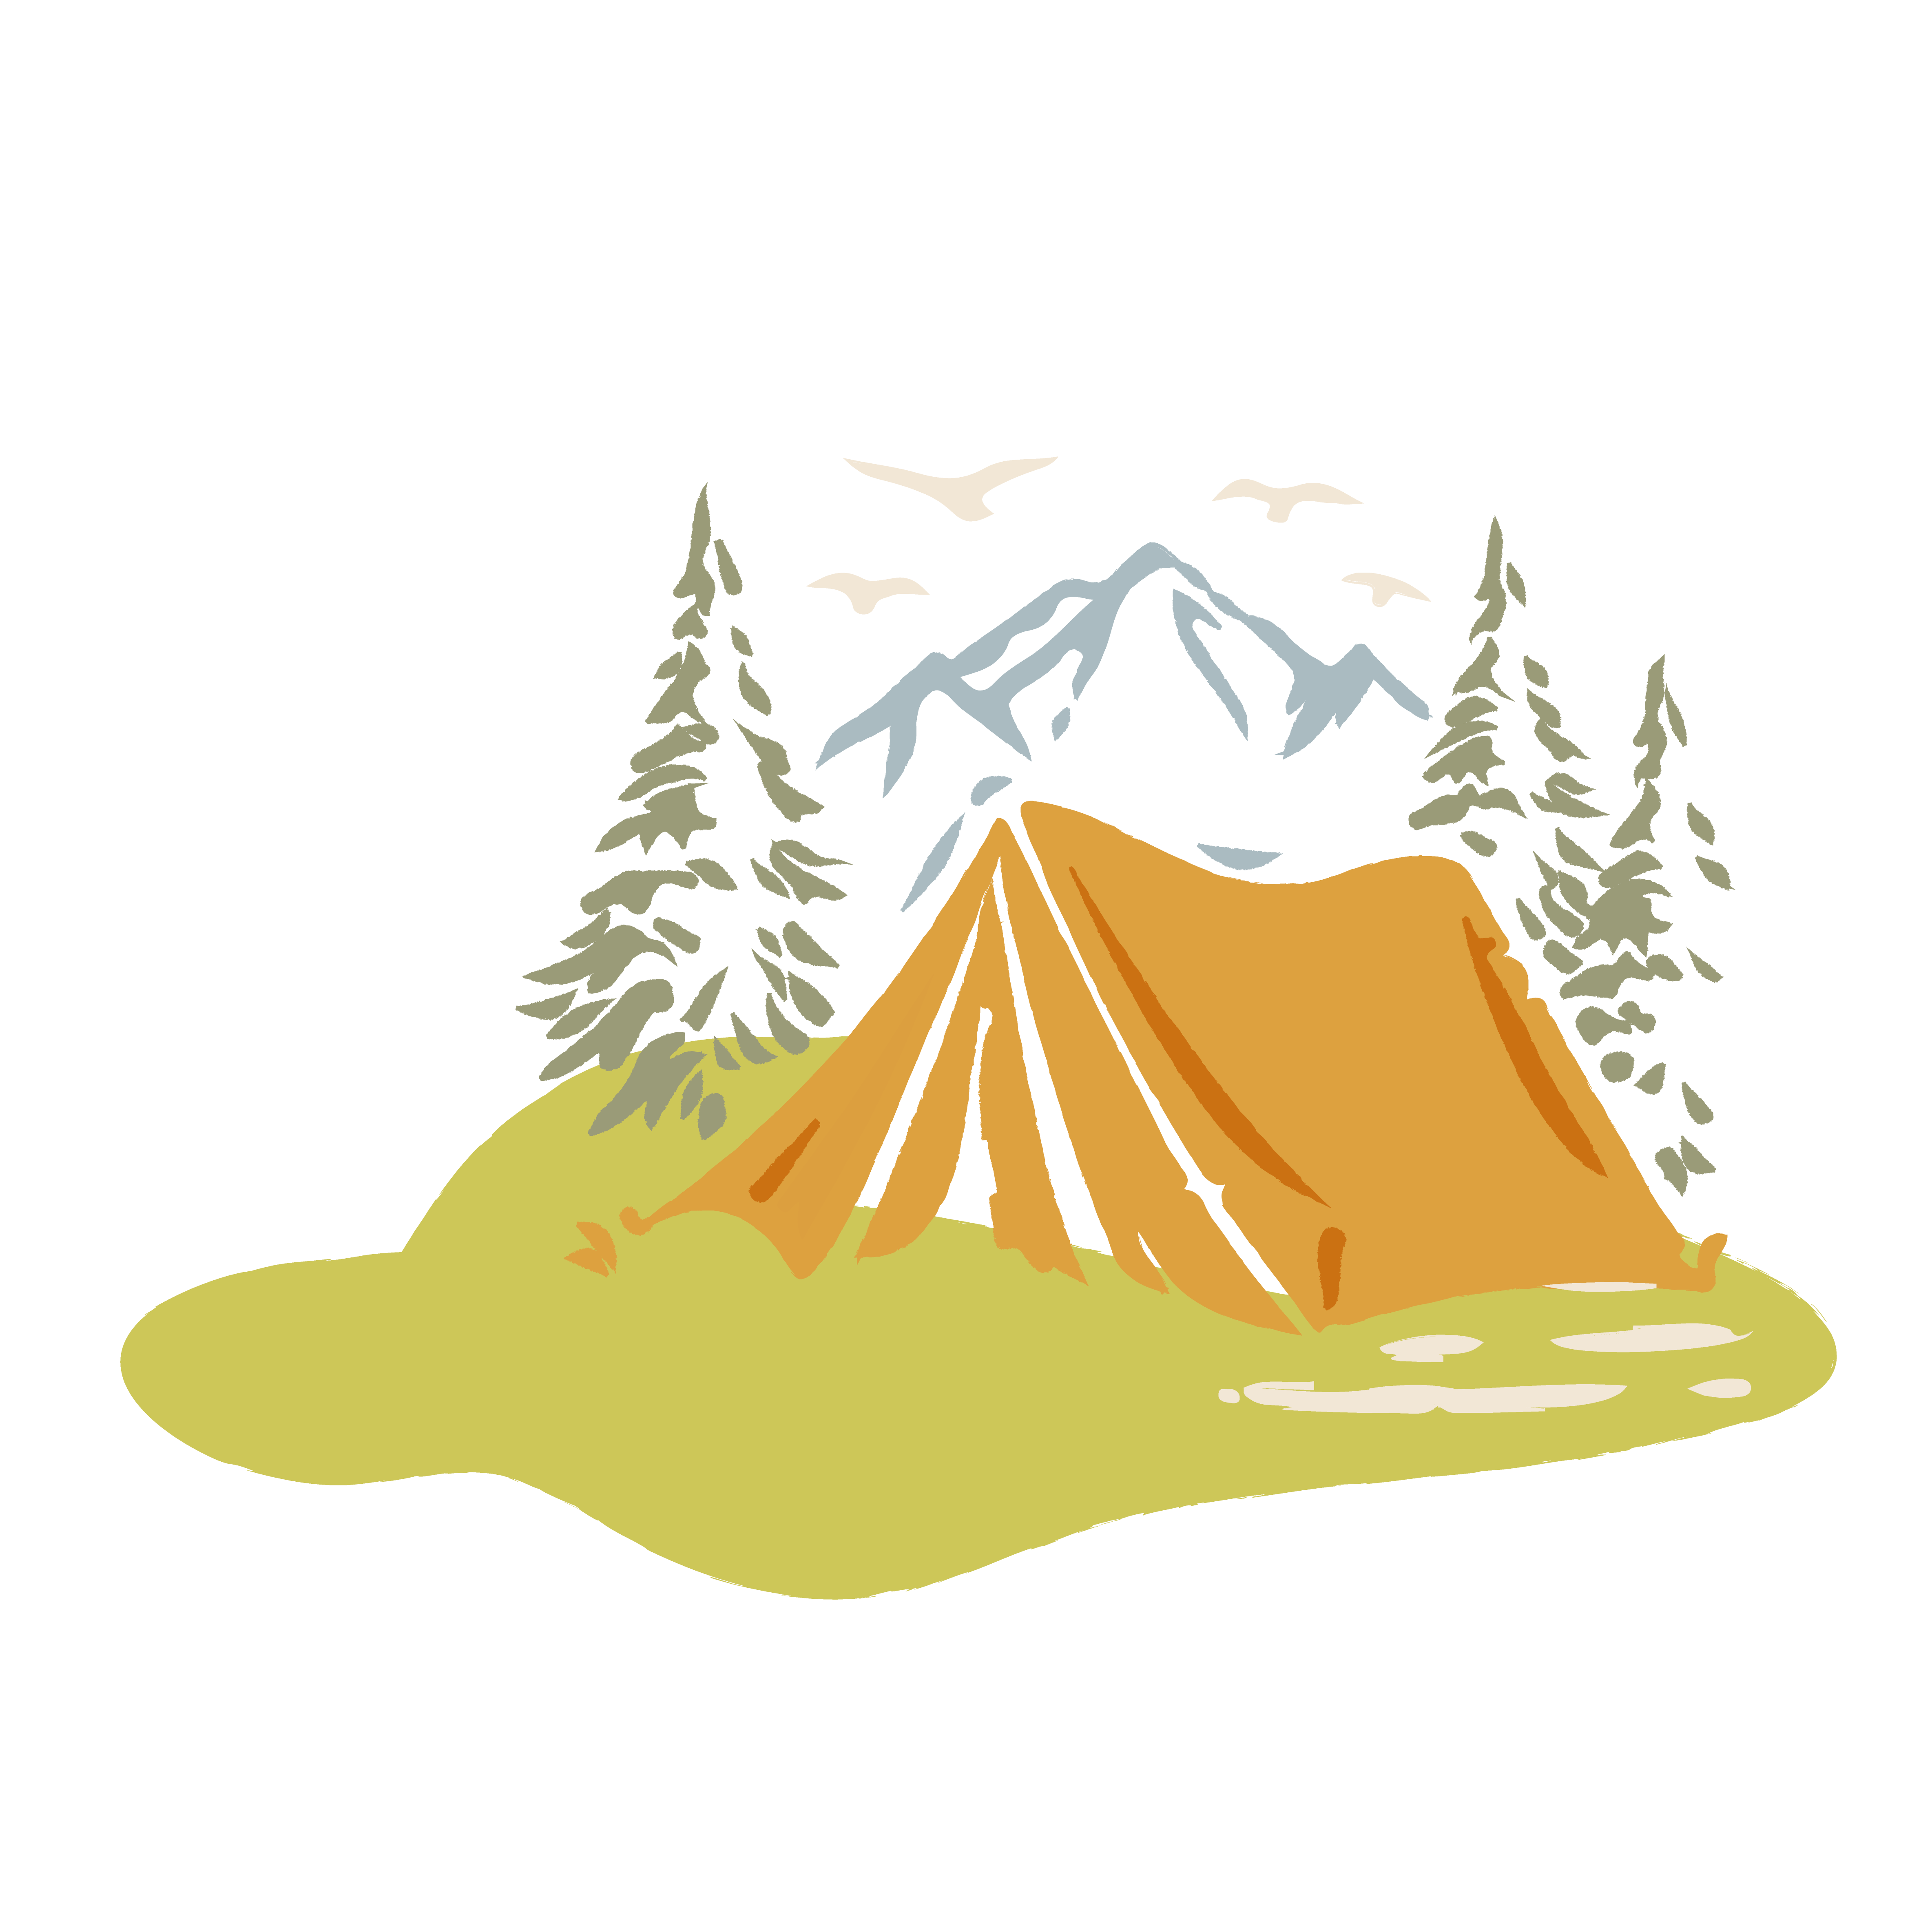 Illustrations tente au milieu de la foret et feu de camp. en arrière plan une montagne et 4 oiseaux dans le ciel